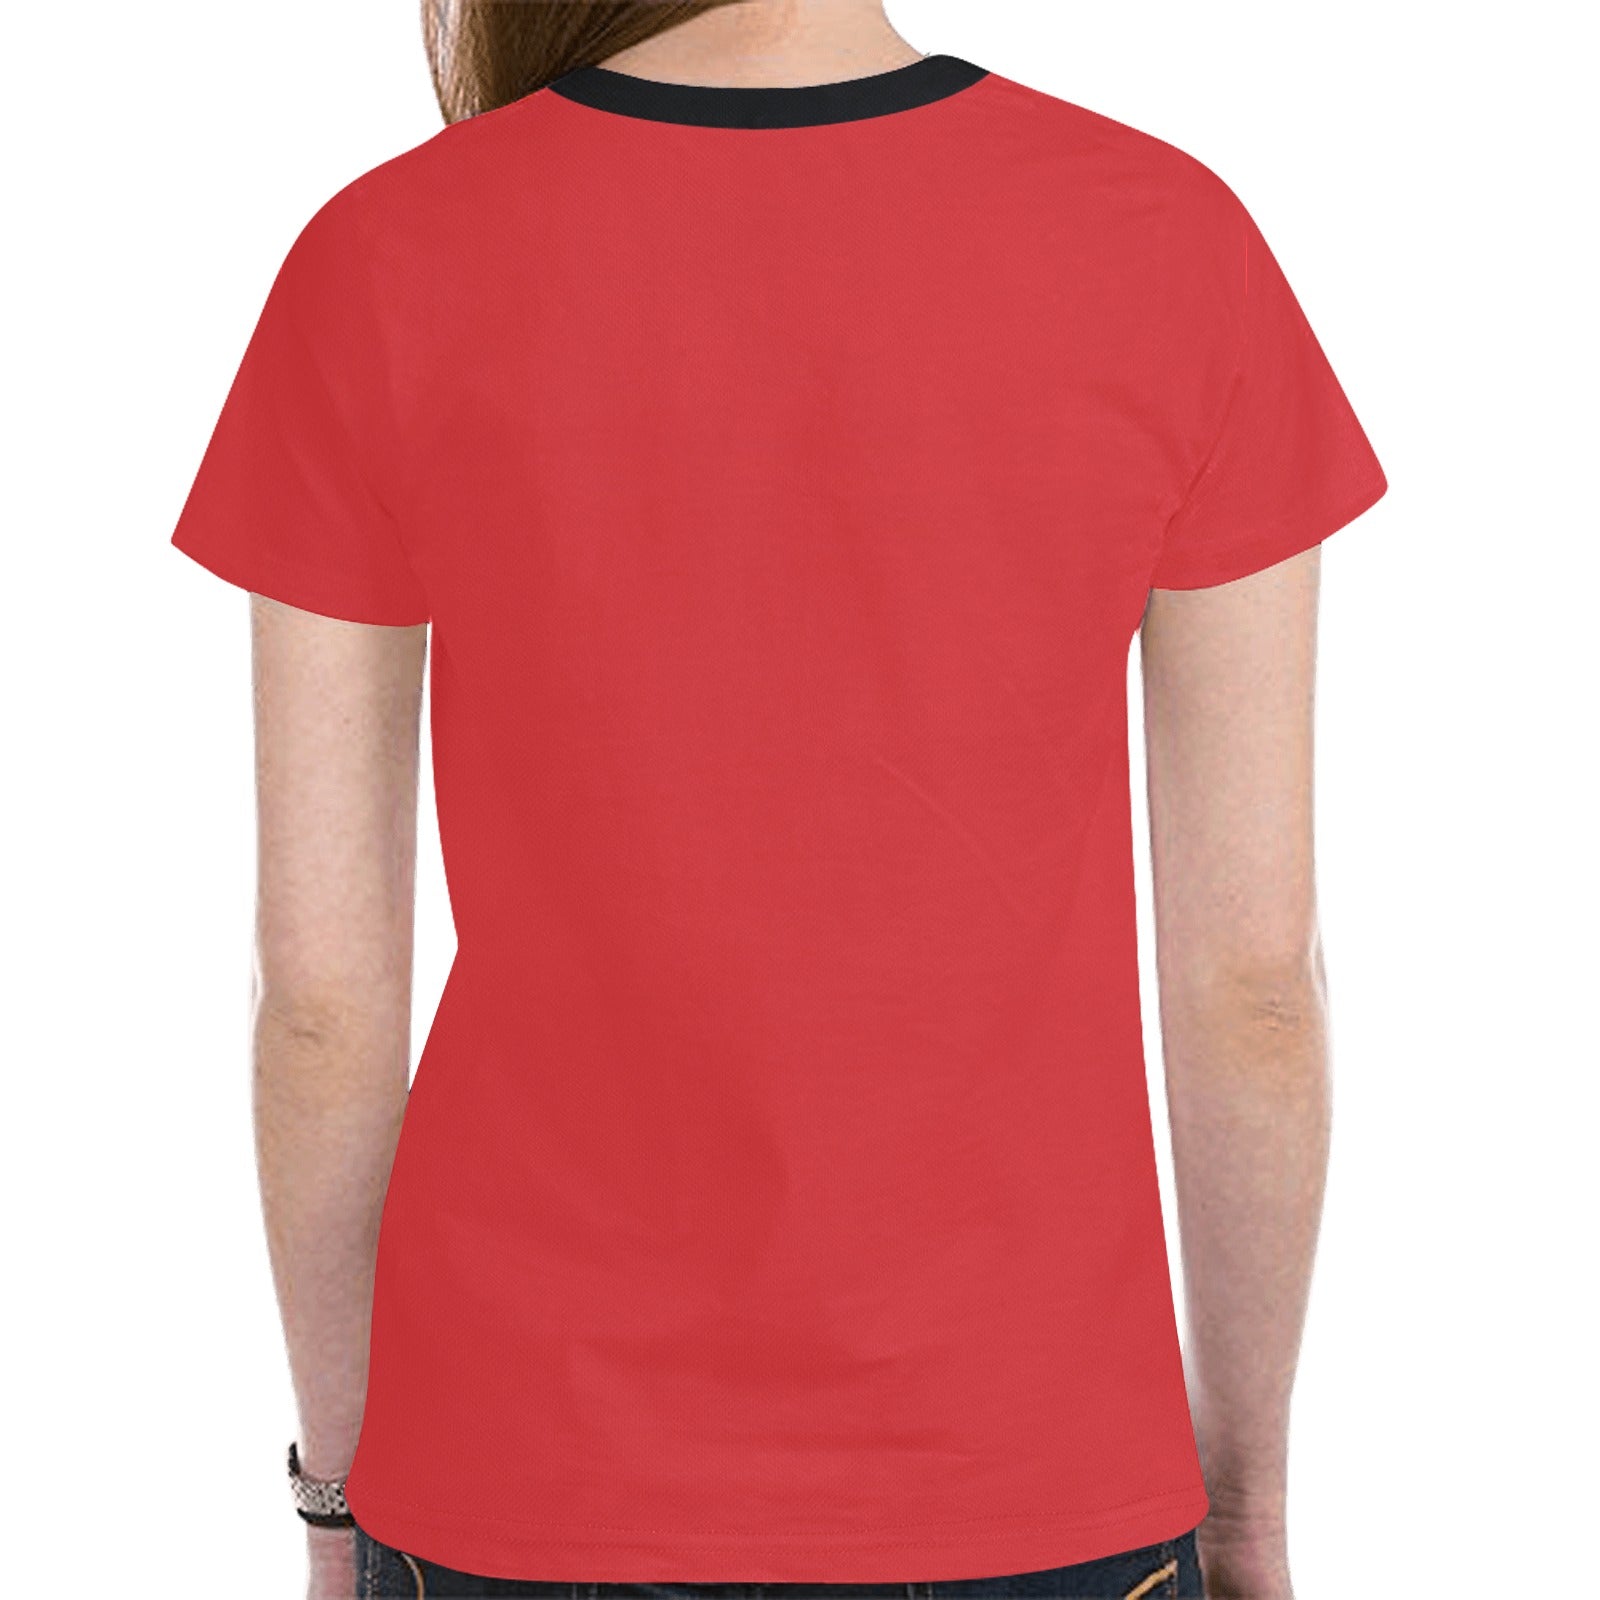 Elk Spirit Guide (Red) T-shirt for Women